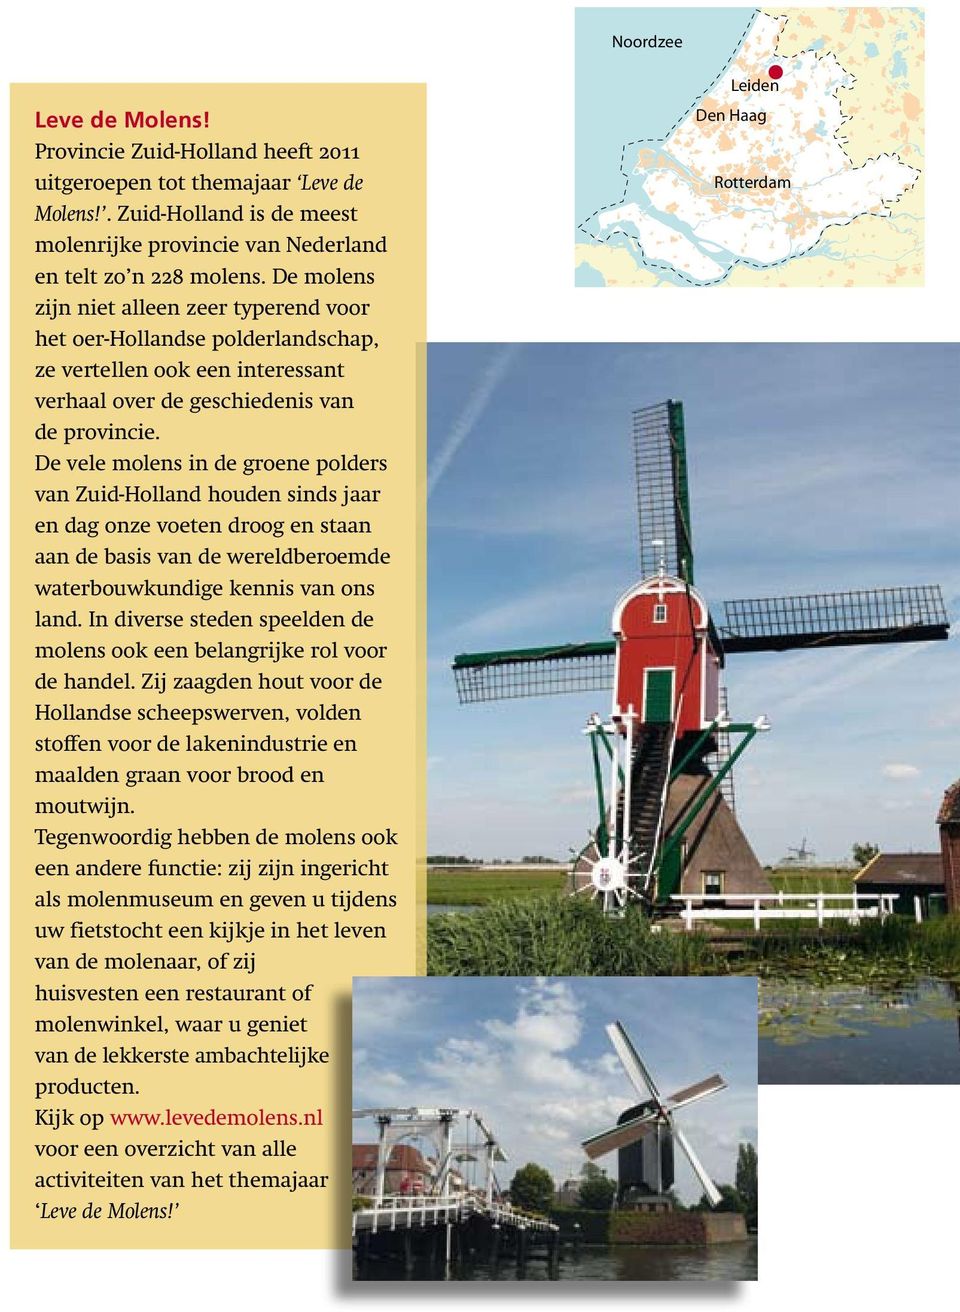 De vele molens in de groene polders van Zuid-Holland houden sinds jaar en dag onze voeten droog en staan aan de basis van de wereldberoemde waterbouwkundige kennis van ons land.